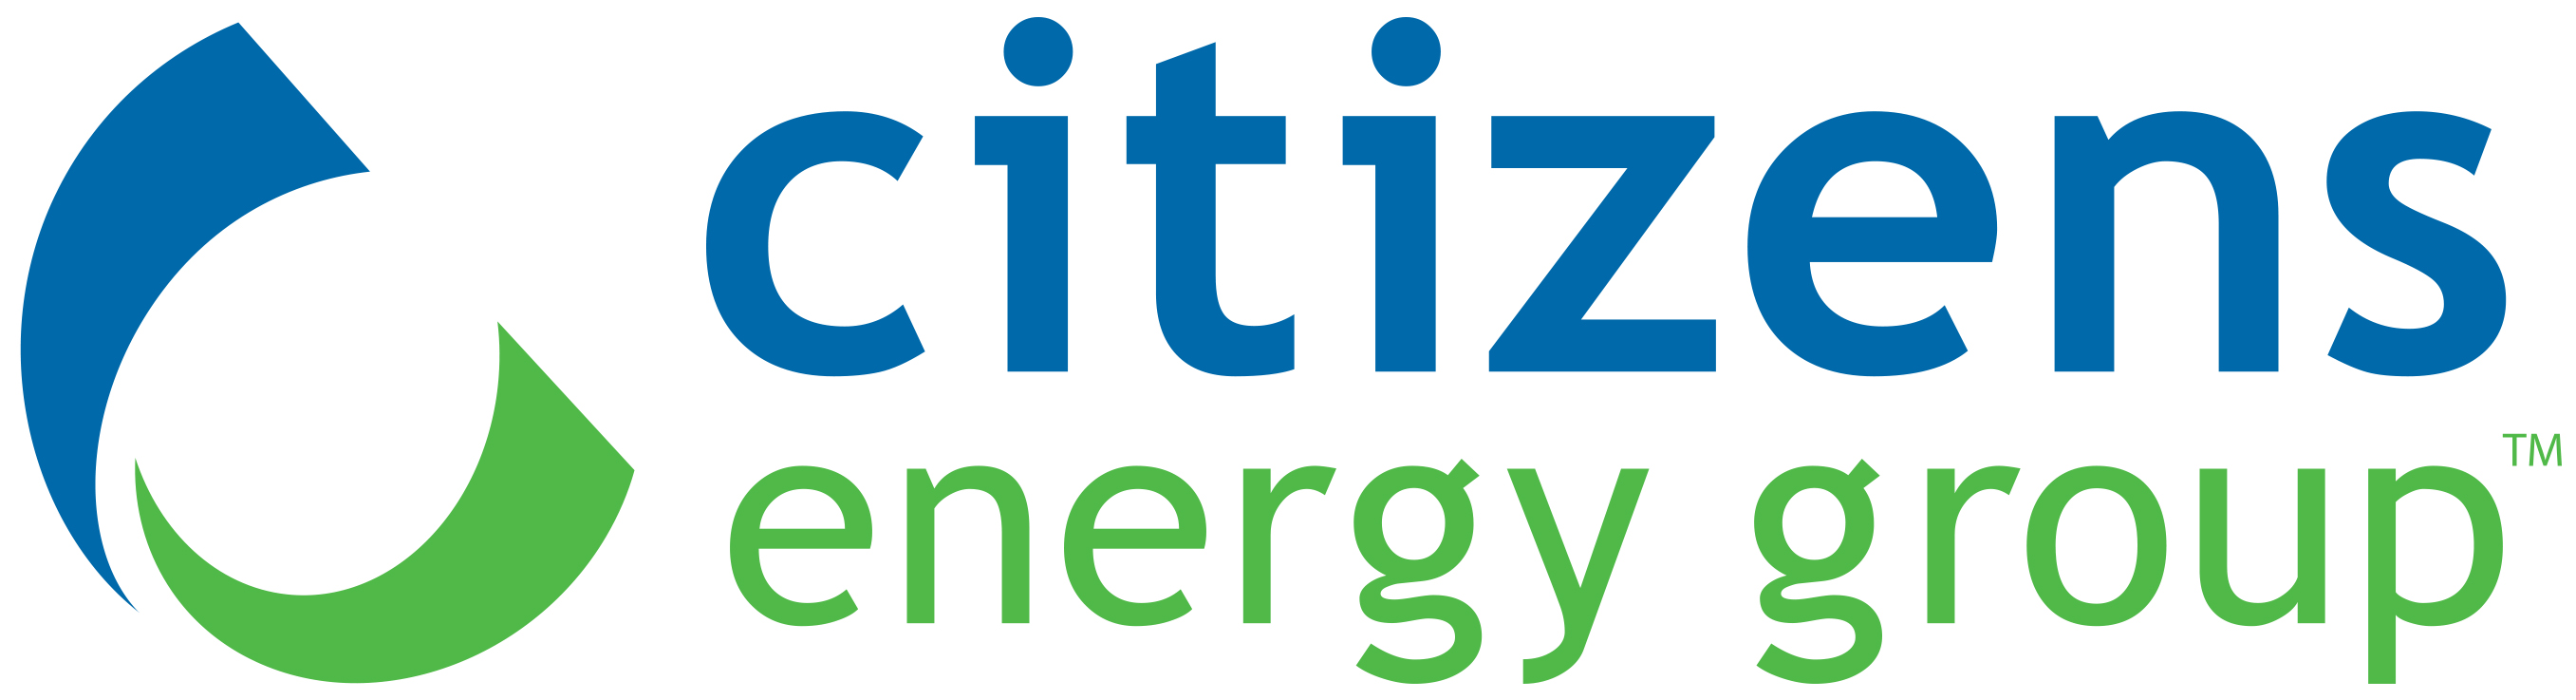 P. Citizens Energy Group (Misión)